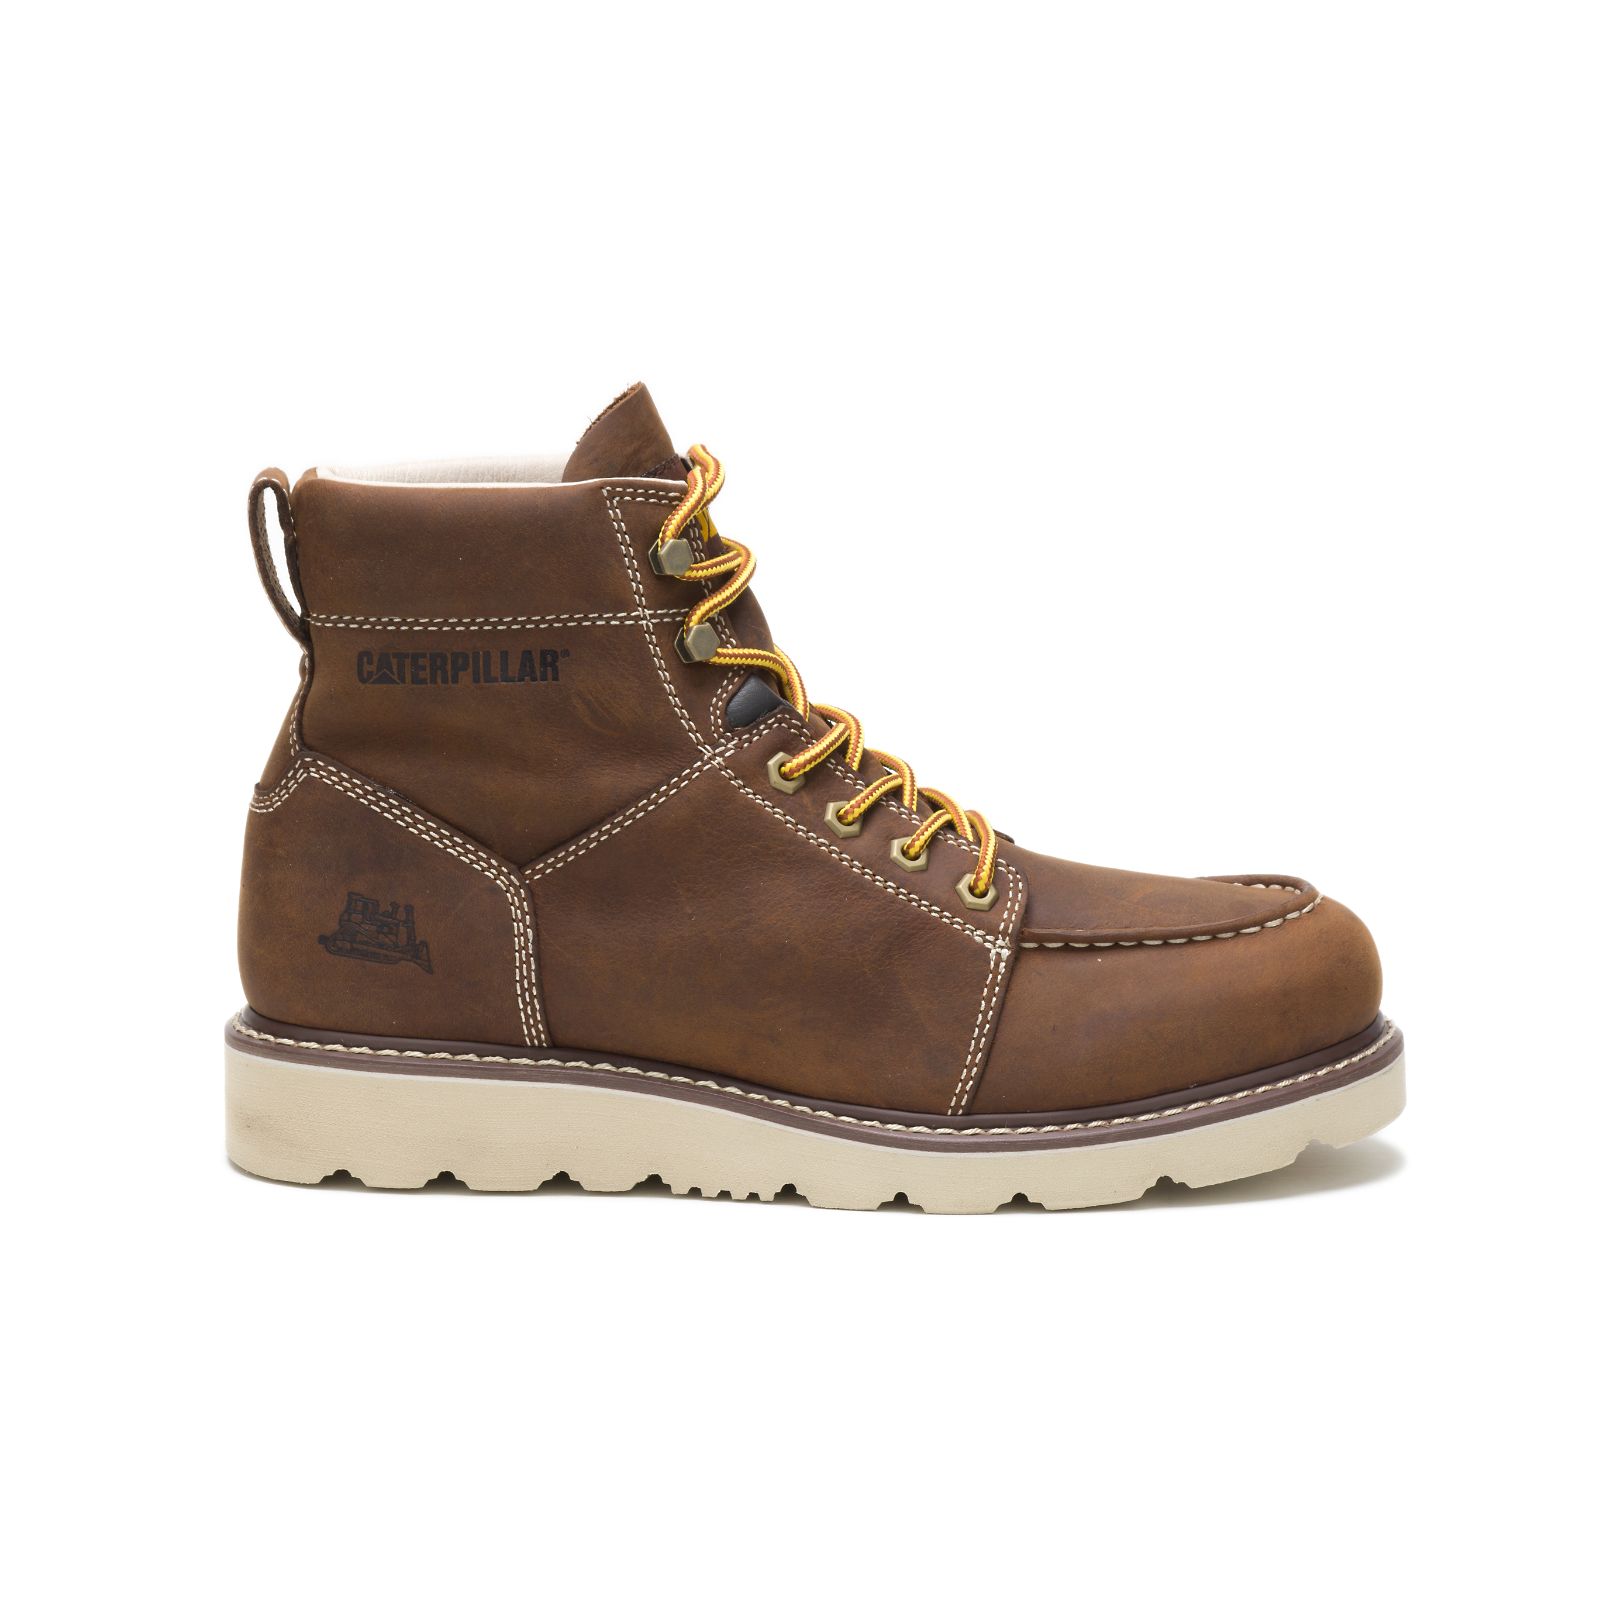 Caterpillar Boots Online - Caterpillar Tradesman Mens Work Boots Chocolate Brown (026875-NXM)